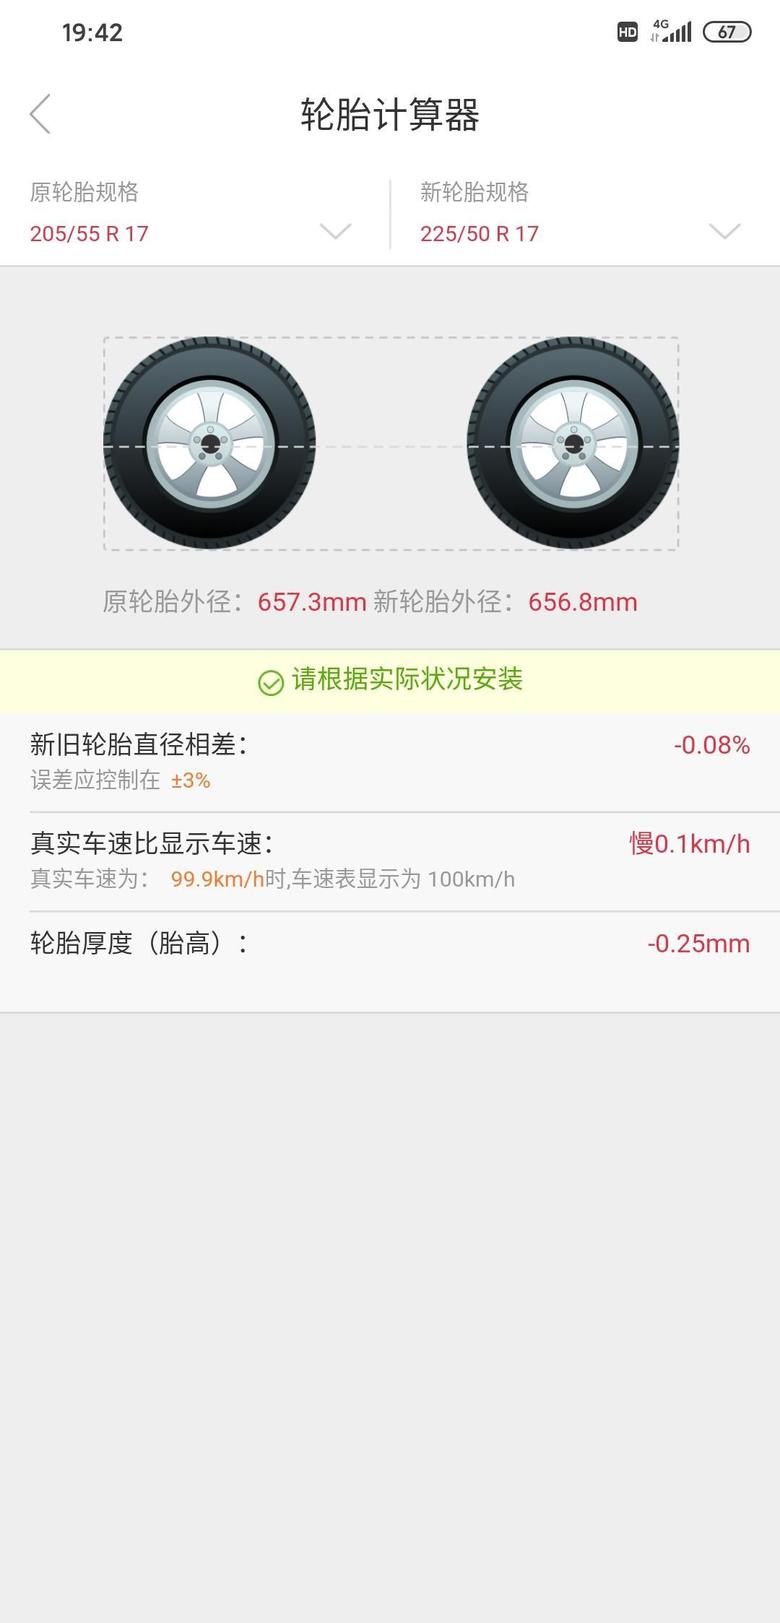 劲客原车轮胎规格205/55R/17，能否换成宽点的轮胎?225/50R/17这样的规格会不会有什么问题?